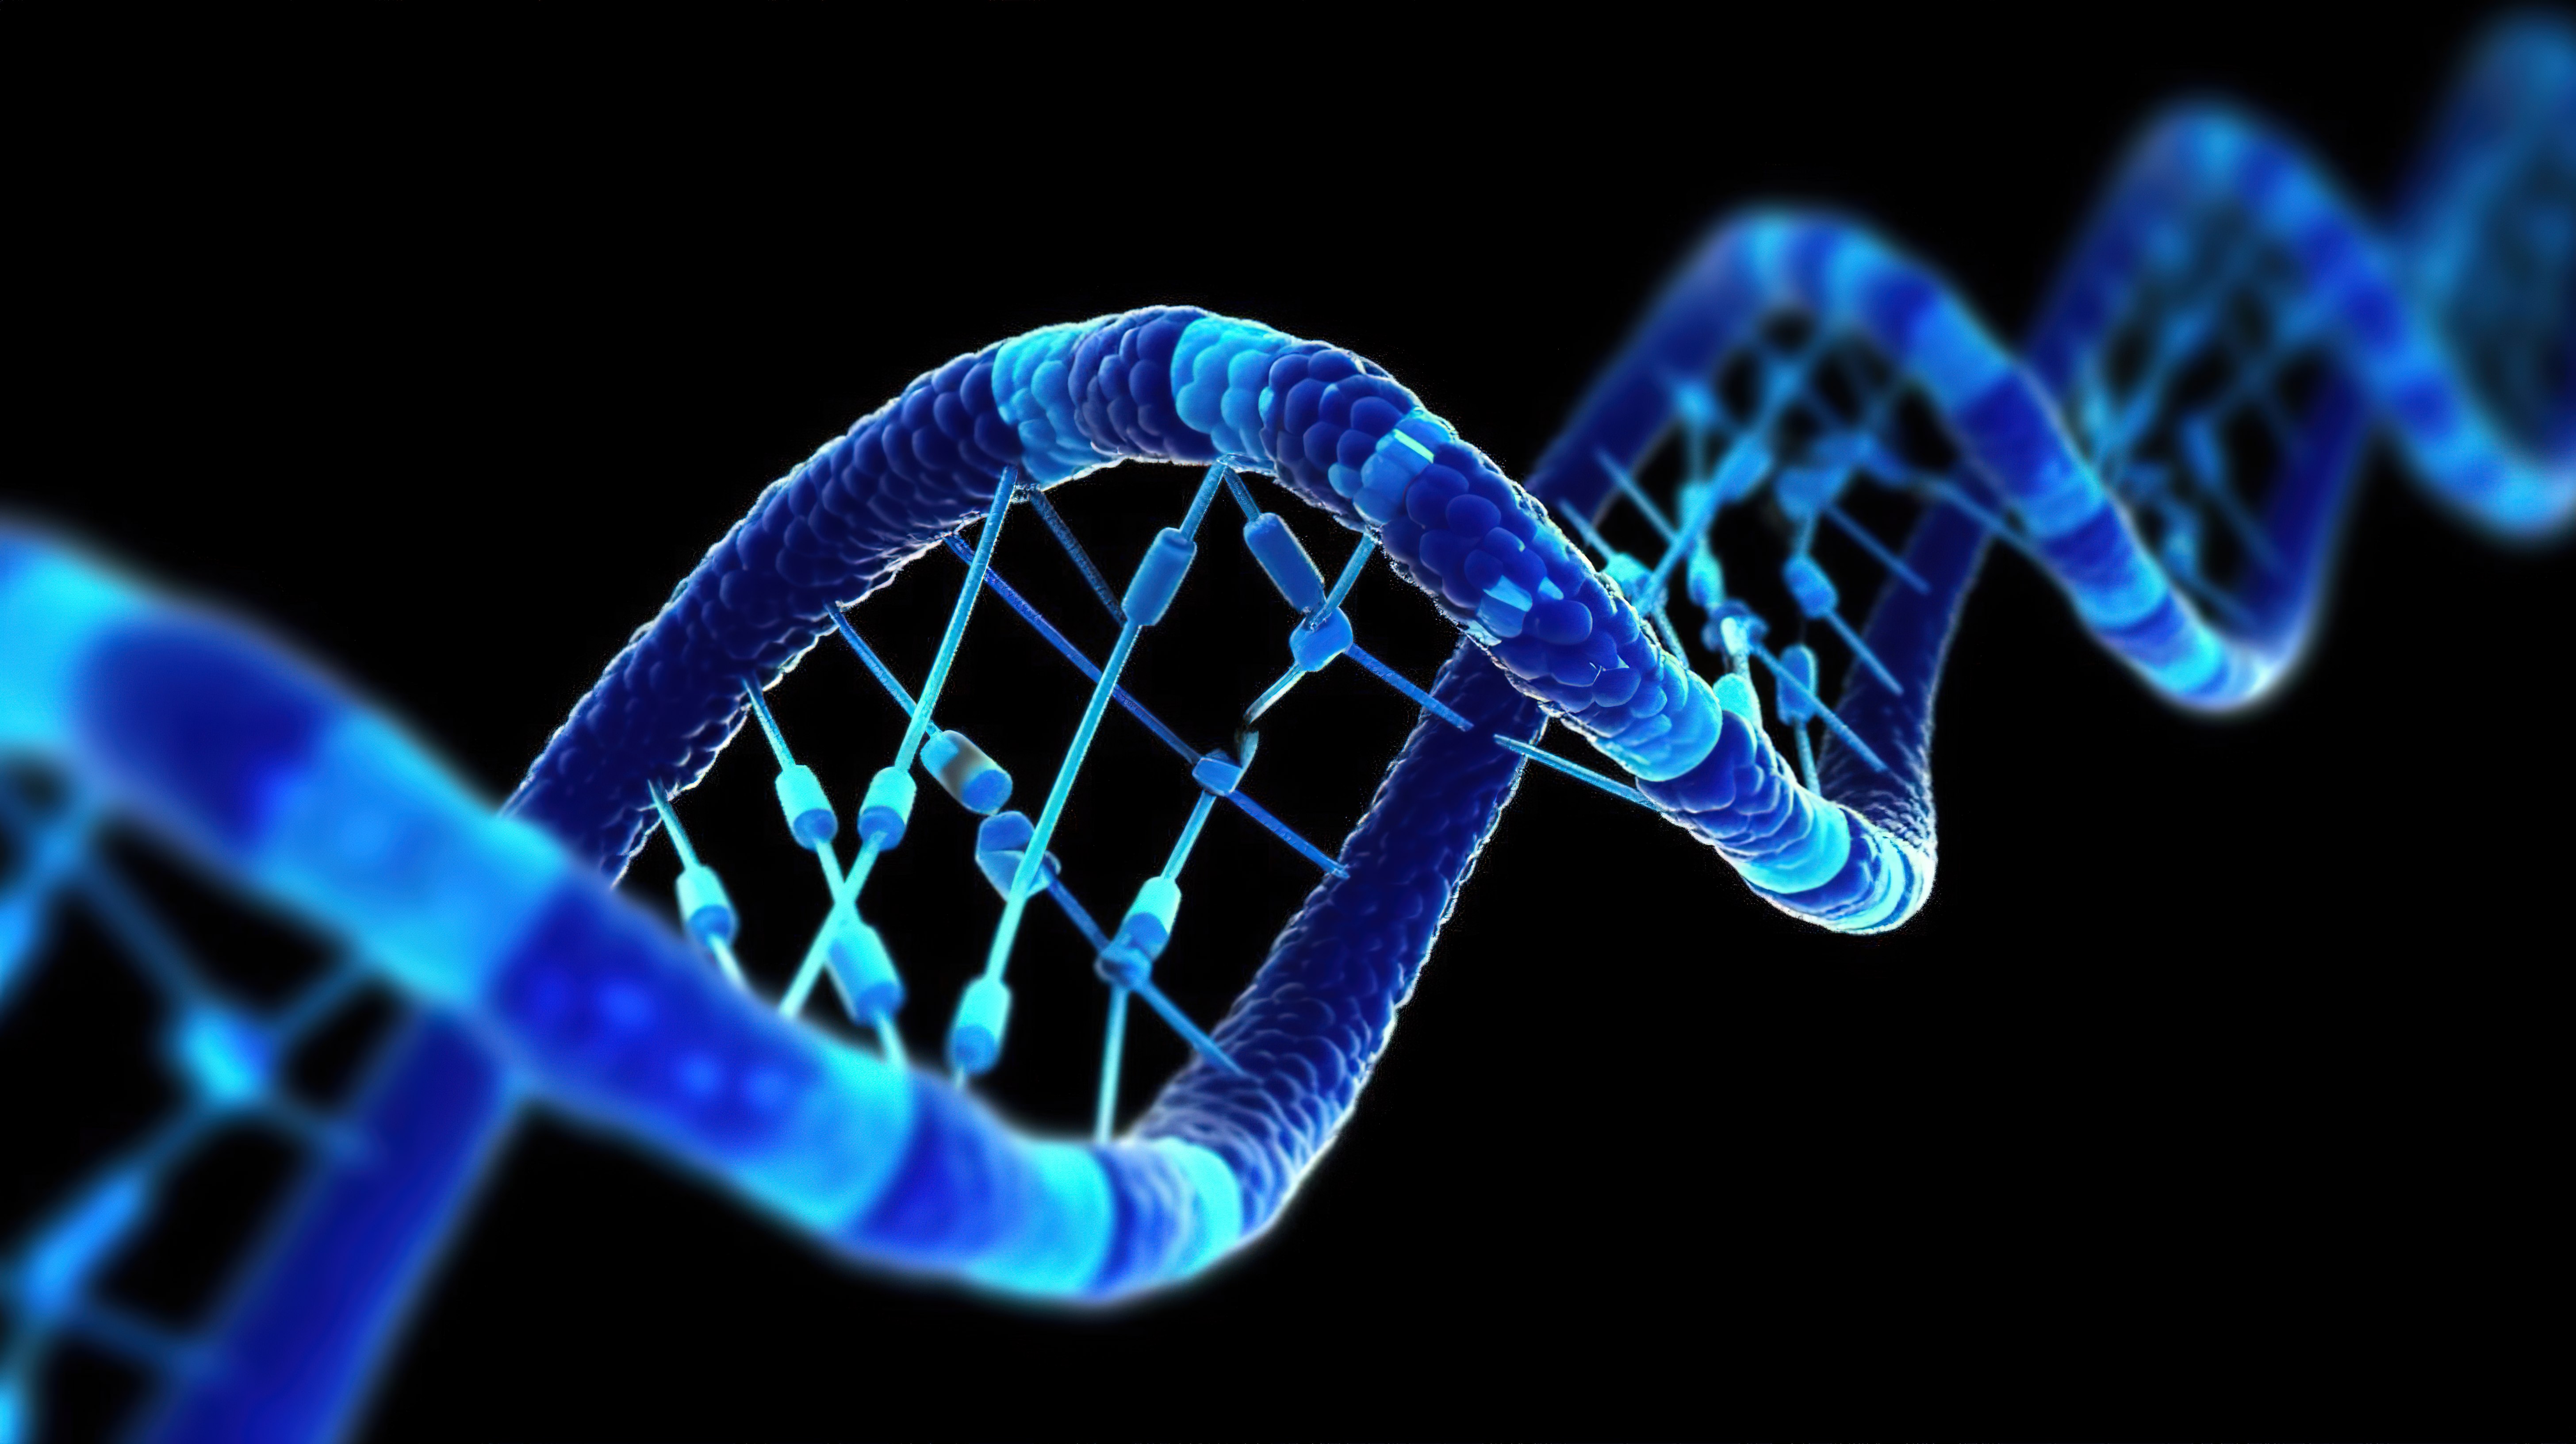 蓝色 dna 螺旋染色体在黑色背景科学和医学概念上进行遗传学修饰的 3d 插图图片